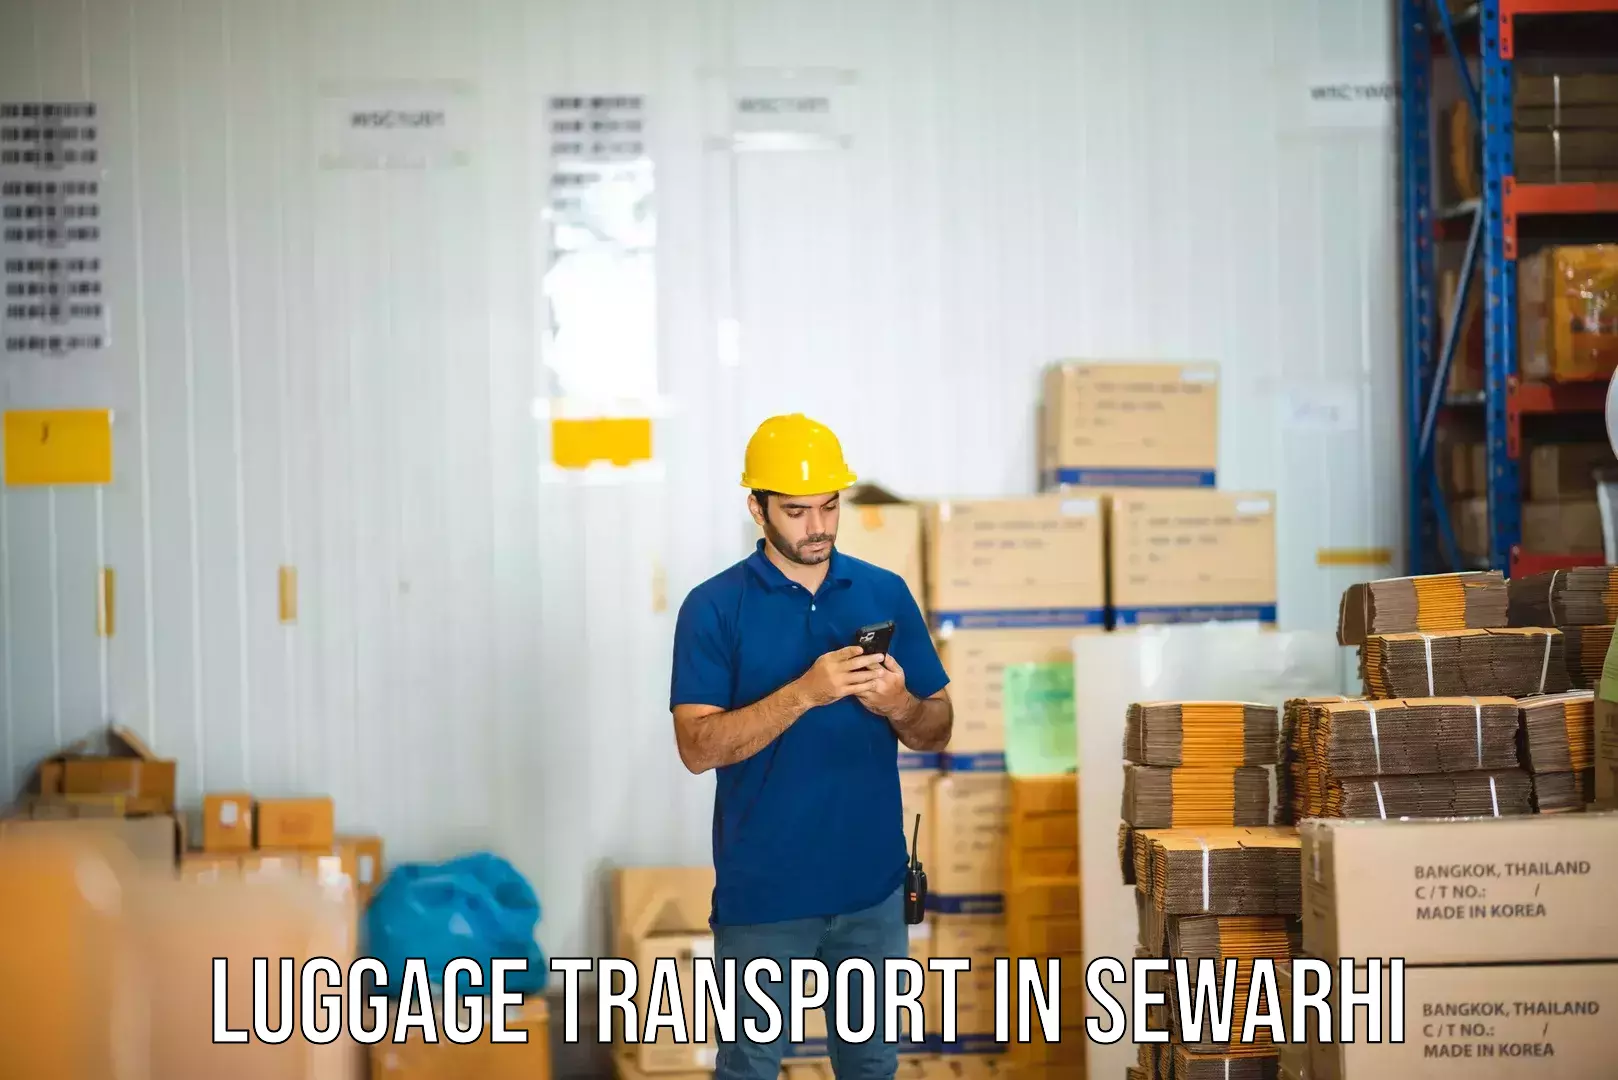 Luggage shipment specialists in Sewarhi